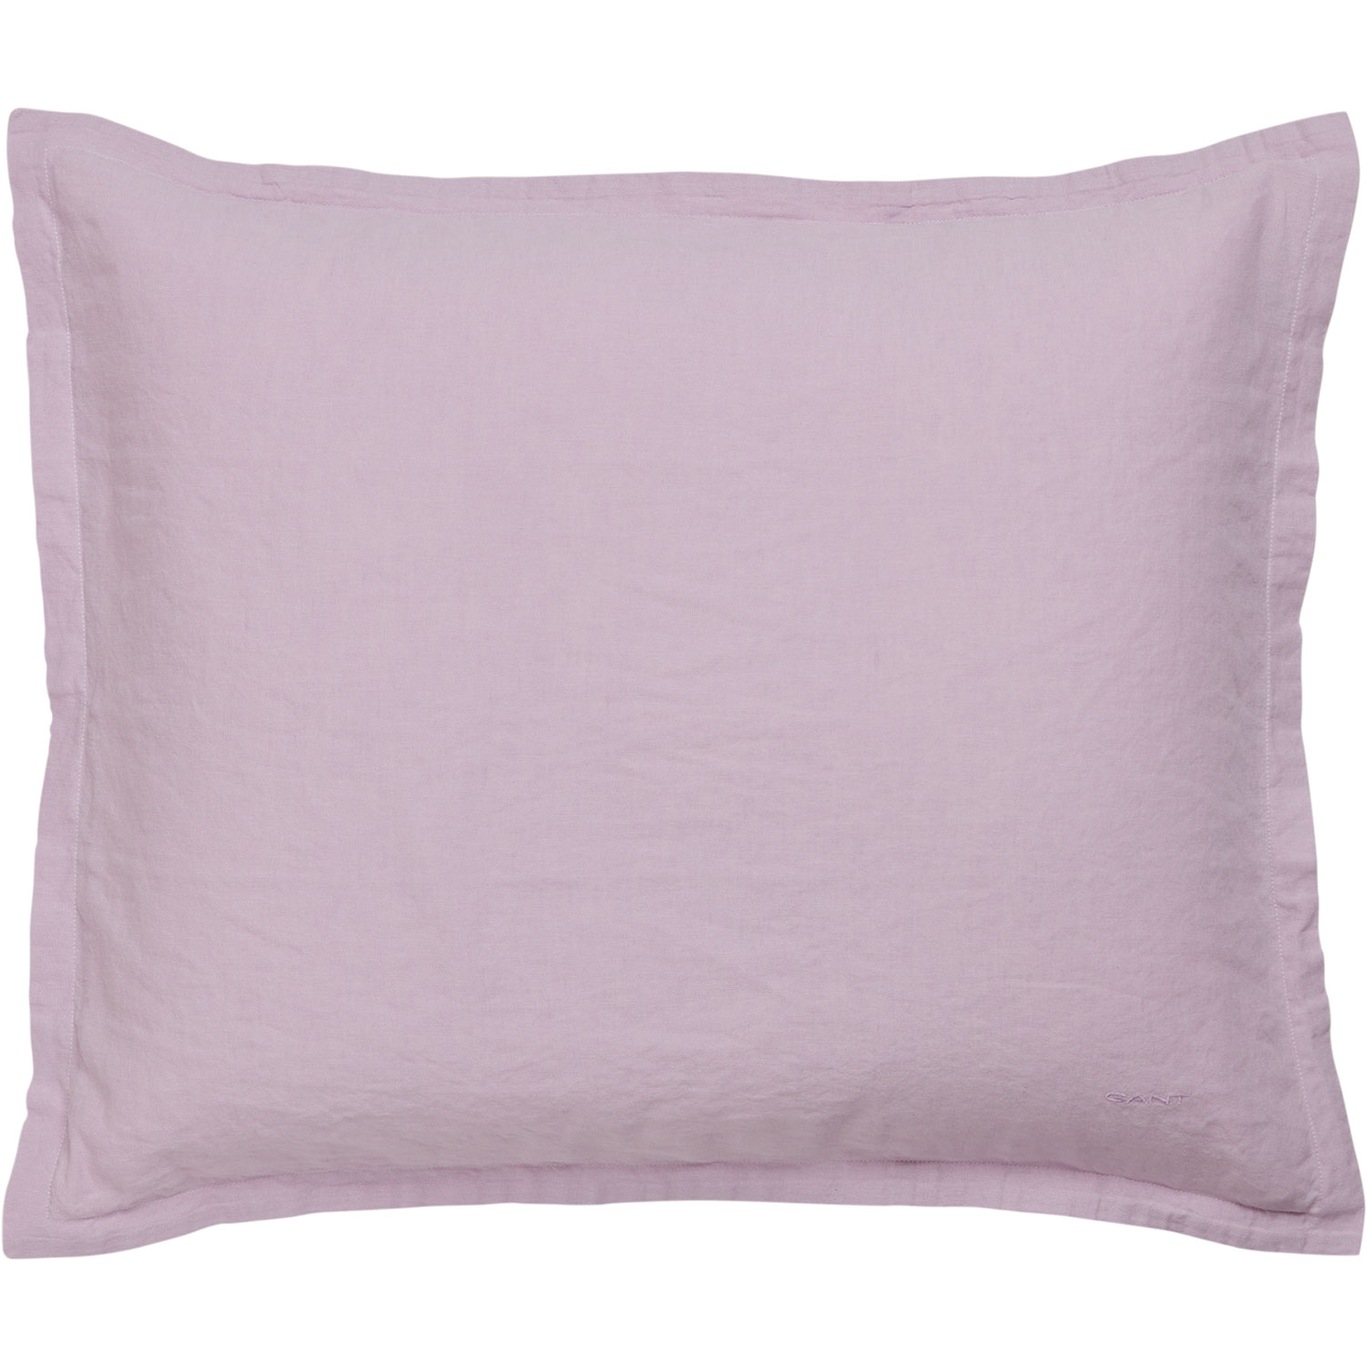 Cotton Linen Tyynynpäällinen 50x60 cm, Soothing Lilac